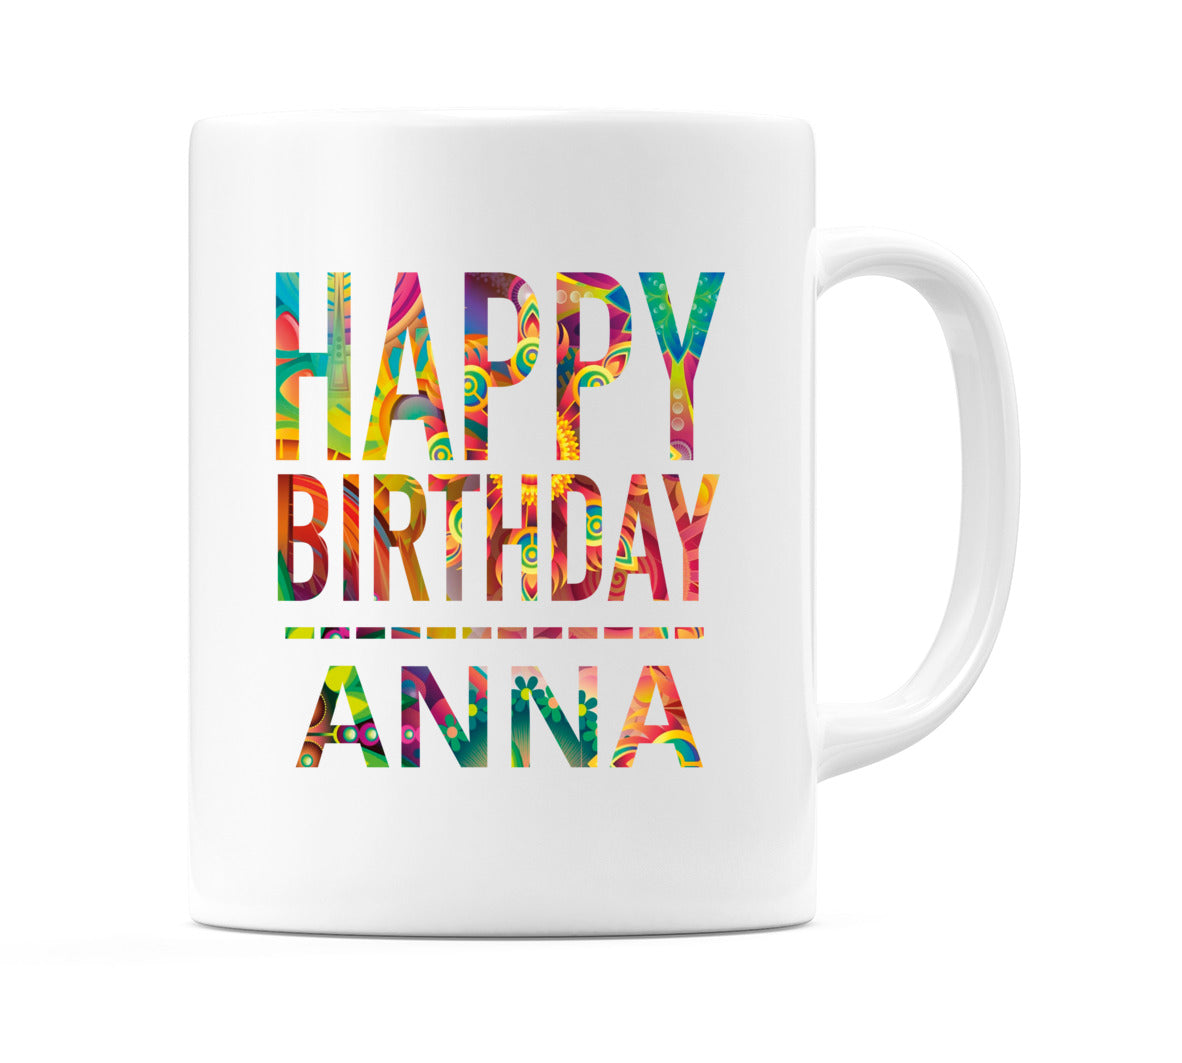 Happy Birthday Anna (Tie Dye Effect) Mug Cup by WeDoMugs